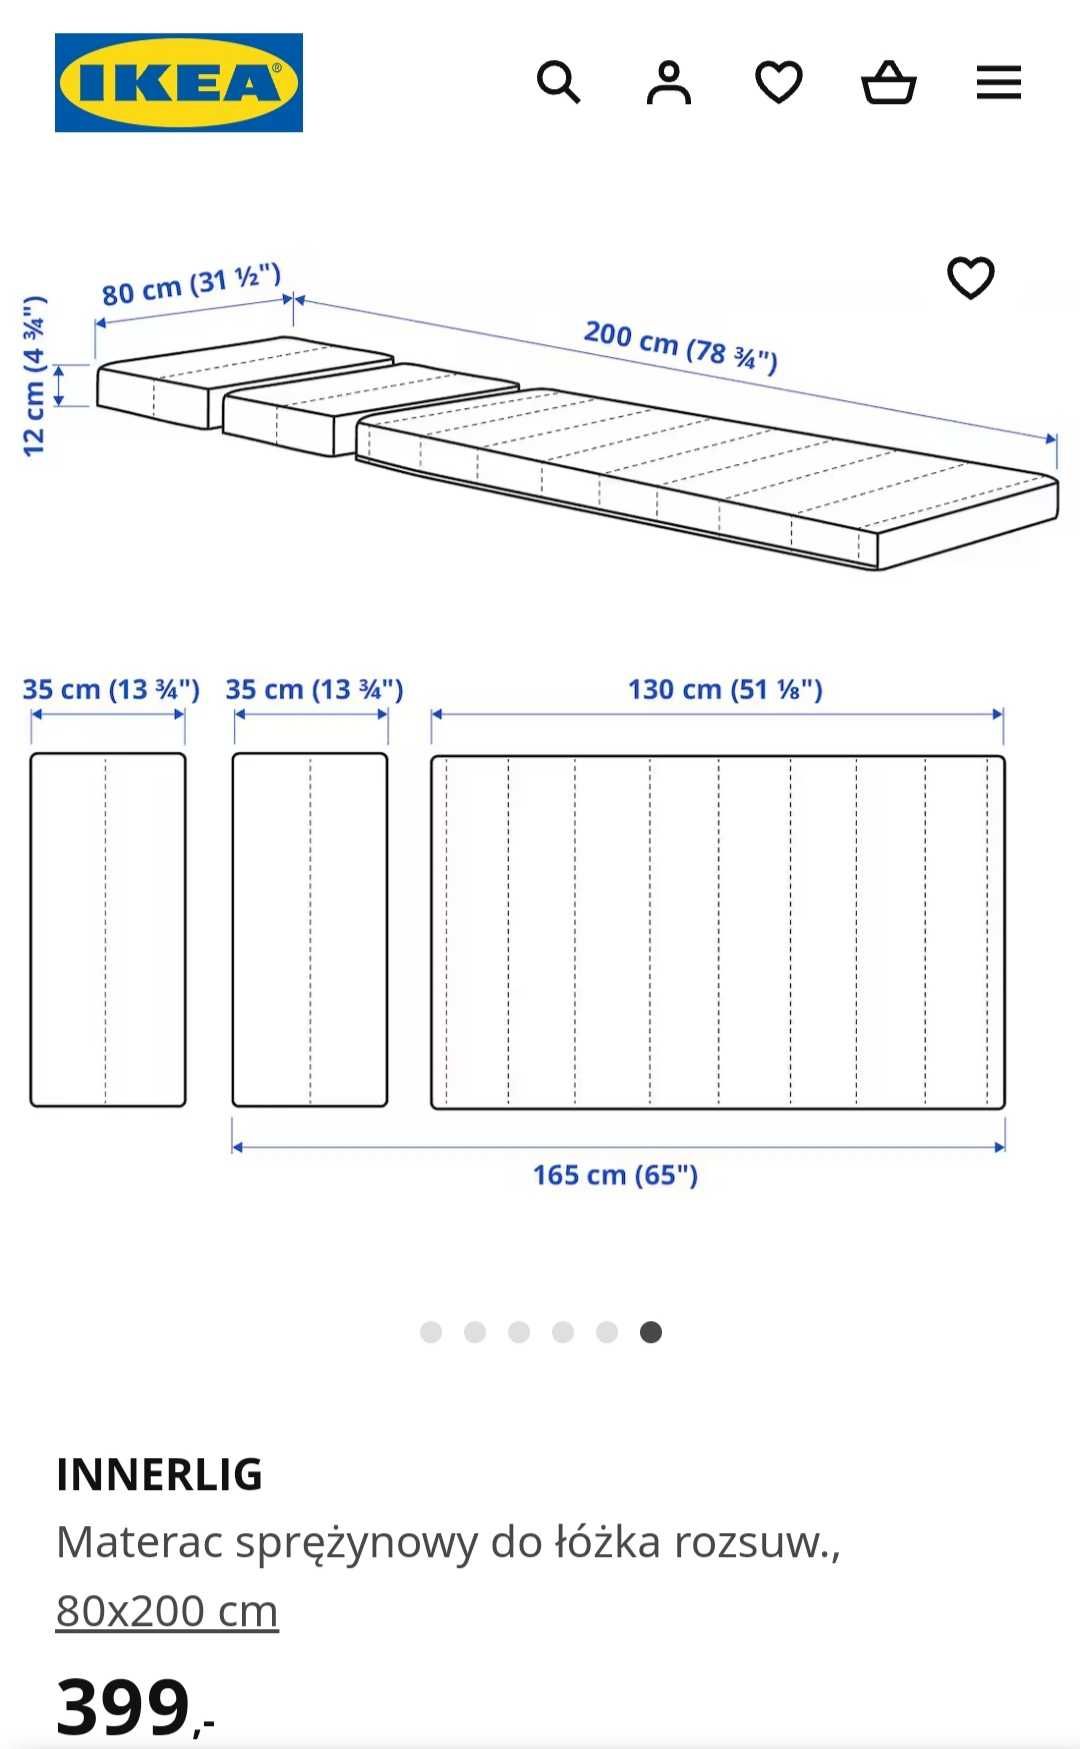 INNERLIG IKEA Materac sprężynowy, regulowany 80x200 cm